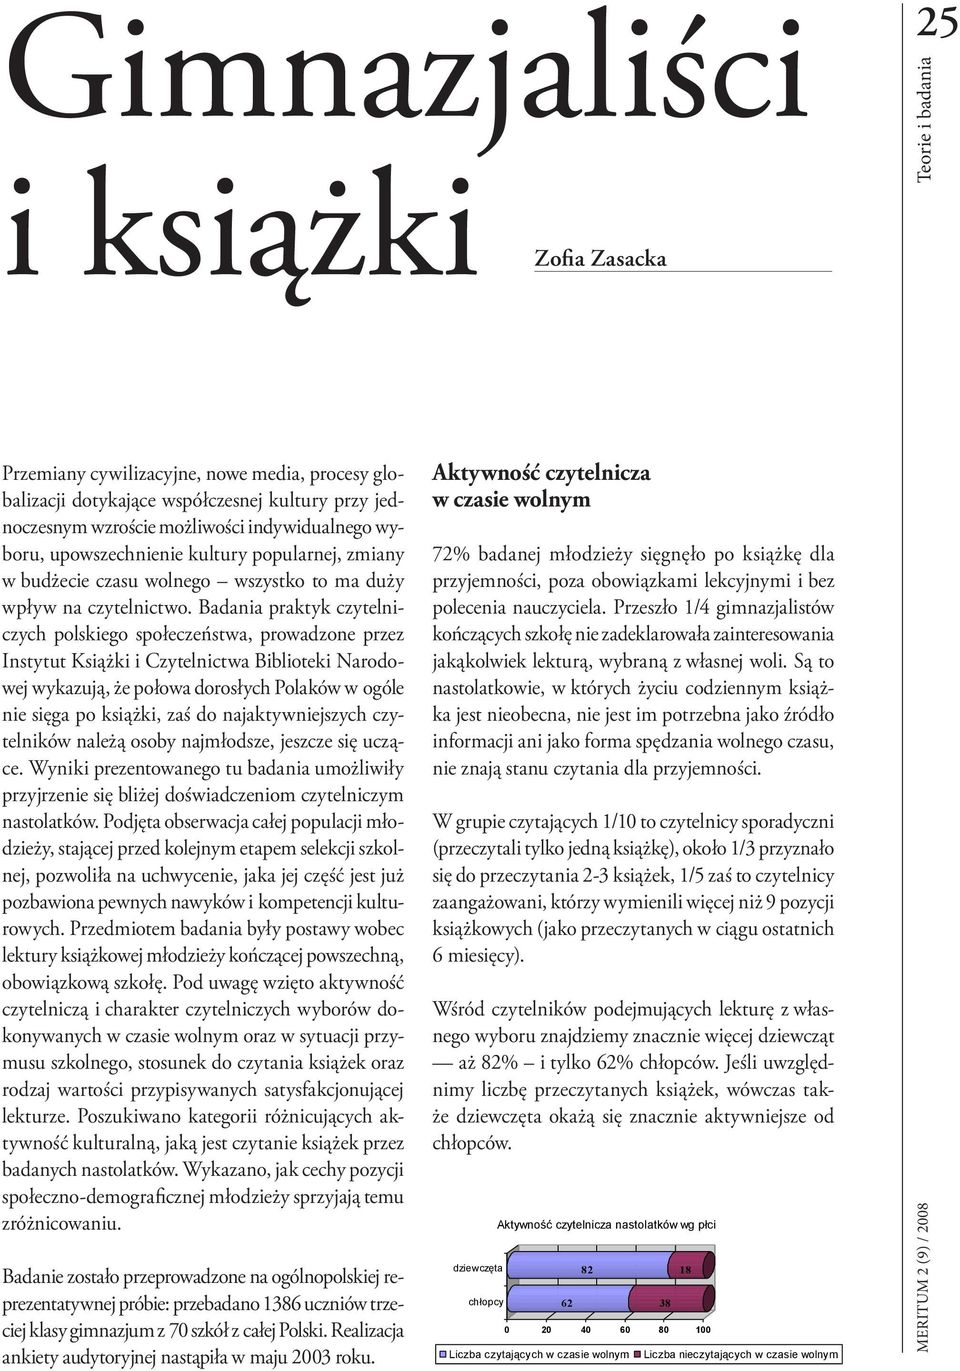 Badania praktyk czytelniczych polskiego społeczeństwa, prowadzone przez Instytut Książki i Czytelnictwa Biblioteki Narodowej wykazują, że połowa dorosłych Polaków w ogóle nie sięga po książki, zaś do